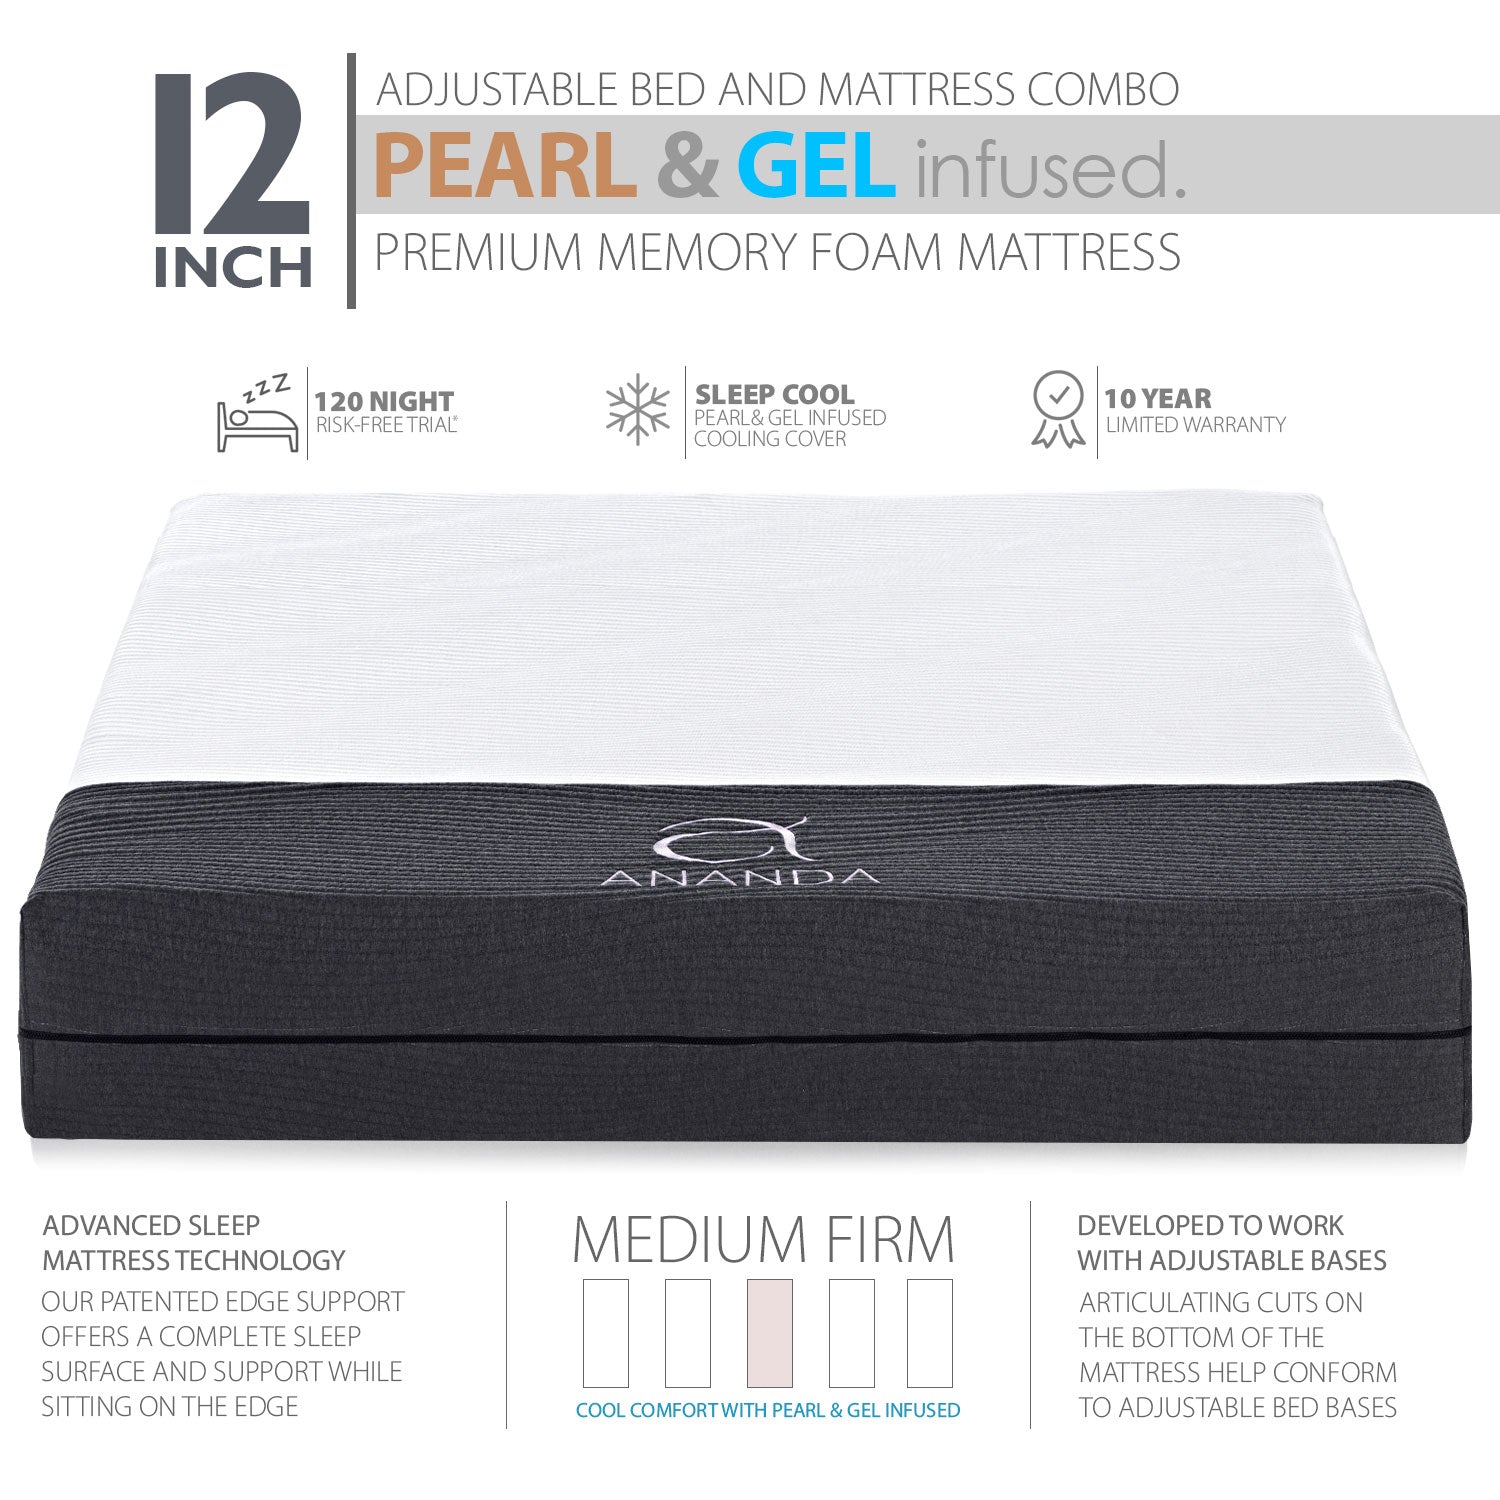 Ananda Sleep Medium Firm 12” Pearl & Cool Gel Infused Memory Foam